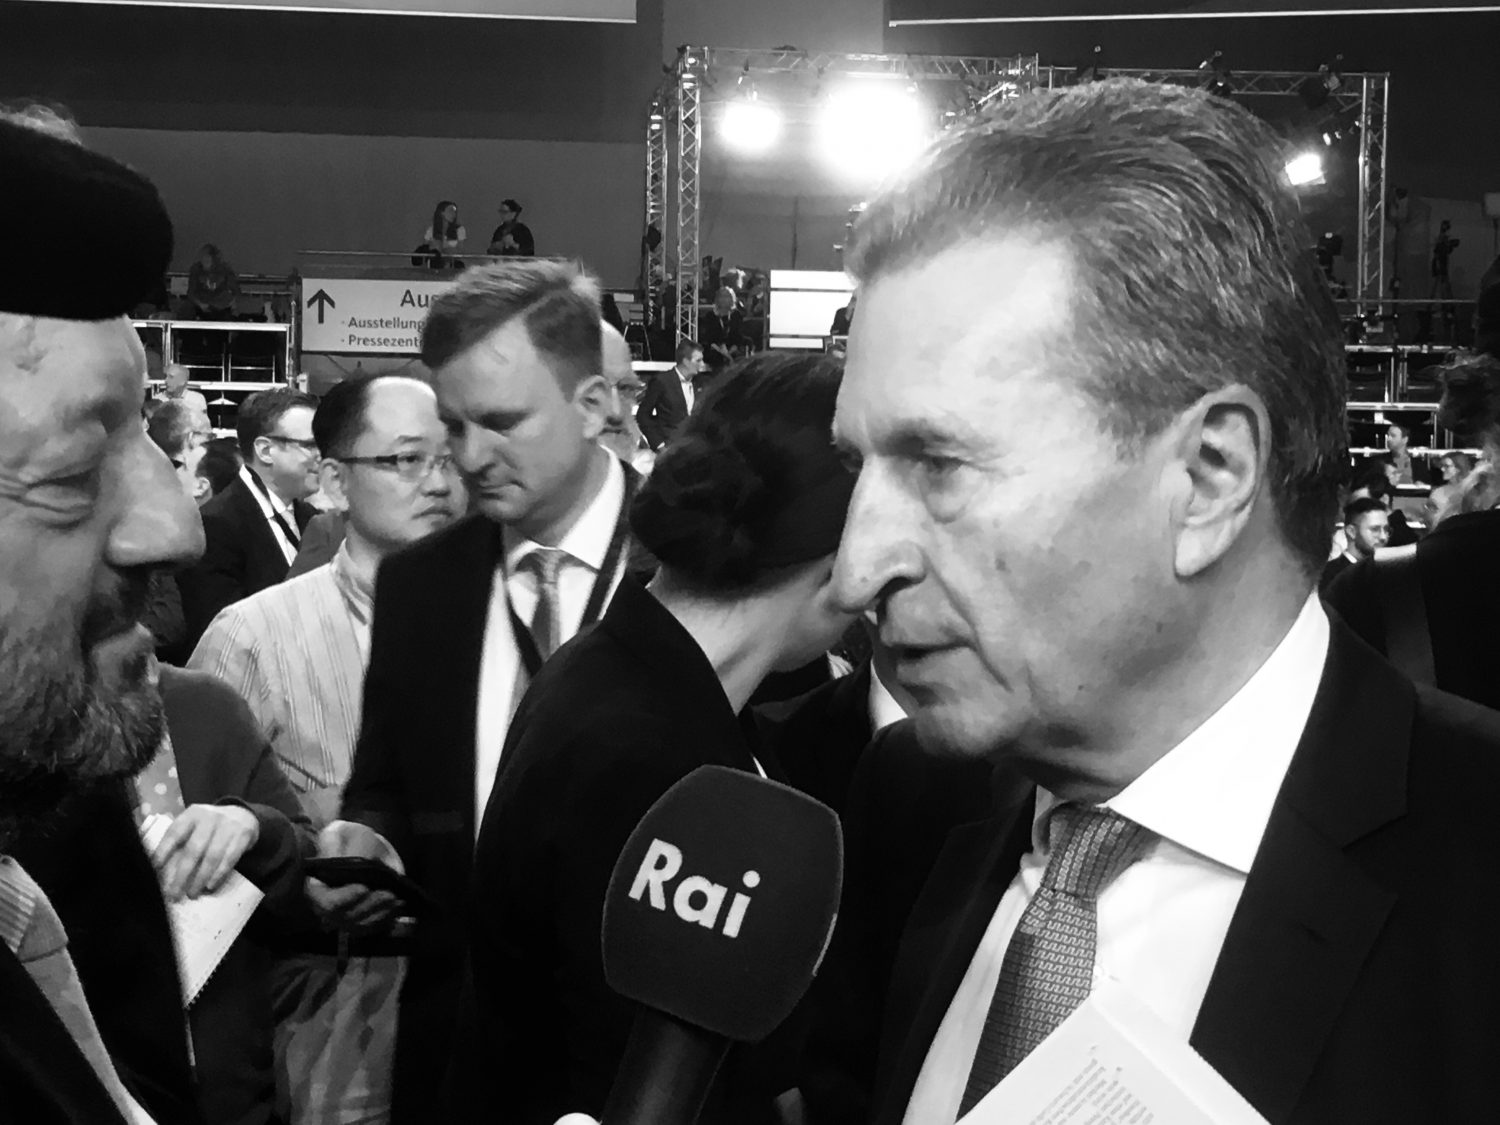 EU-Kommissar Günther Oettinger im Interview auf dem Bundesparteitag CDU Hamburg 2018. Er wirbt für Friedrich Merz als neuen Parteivorsitzenden.